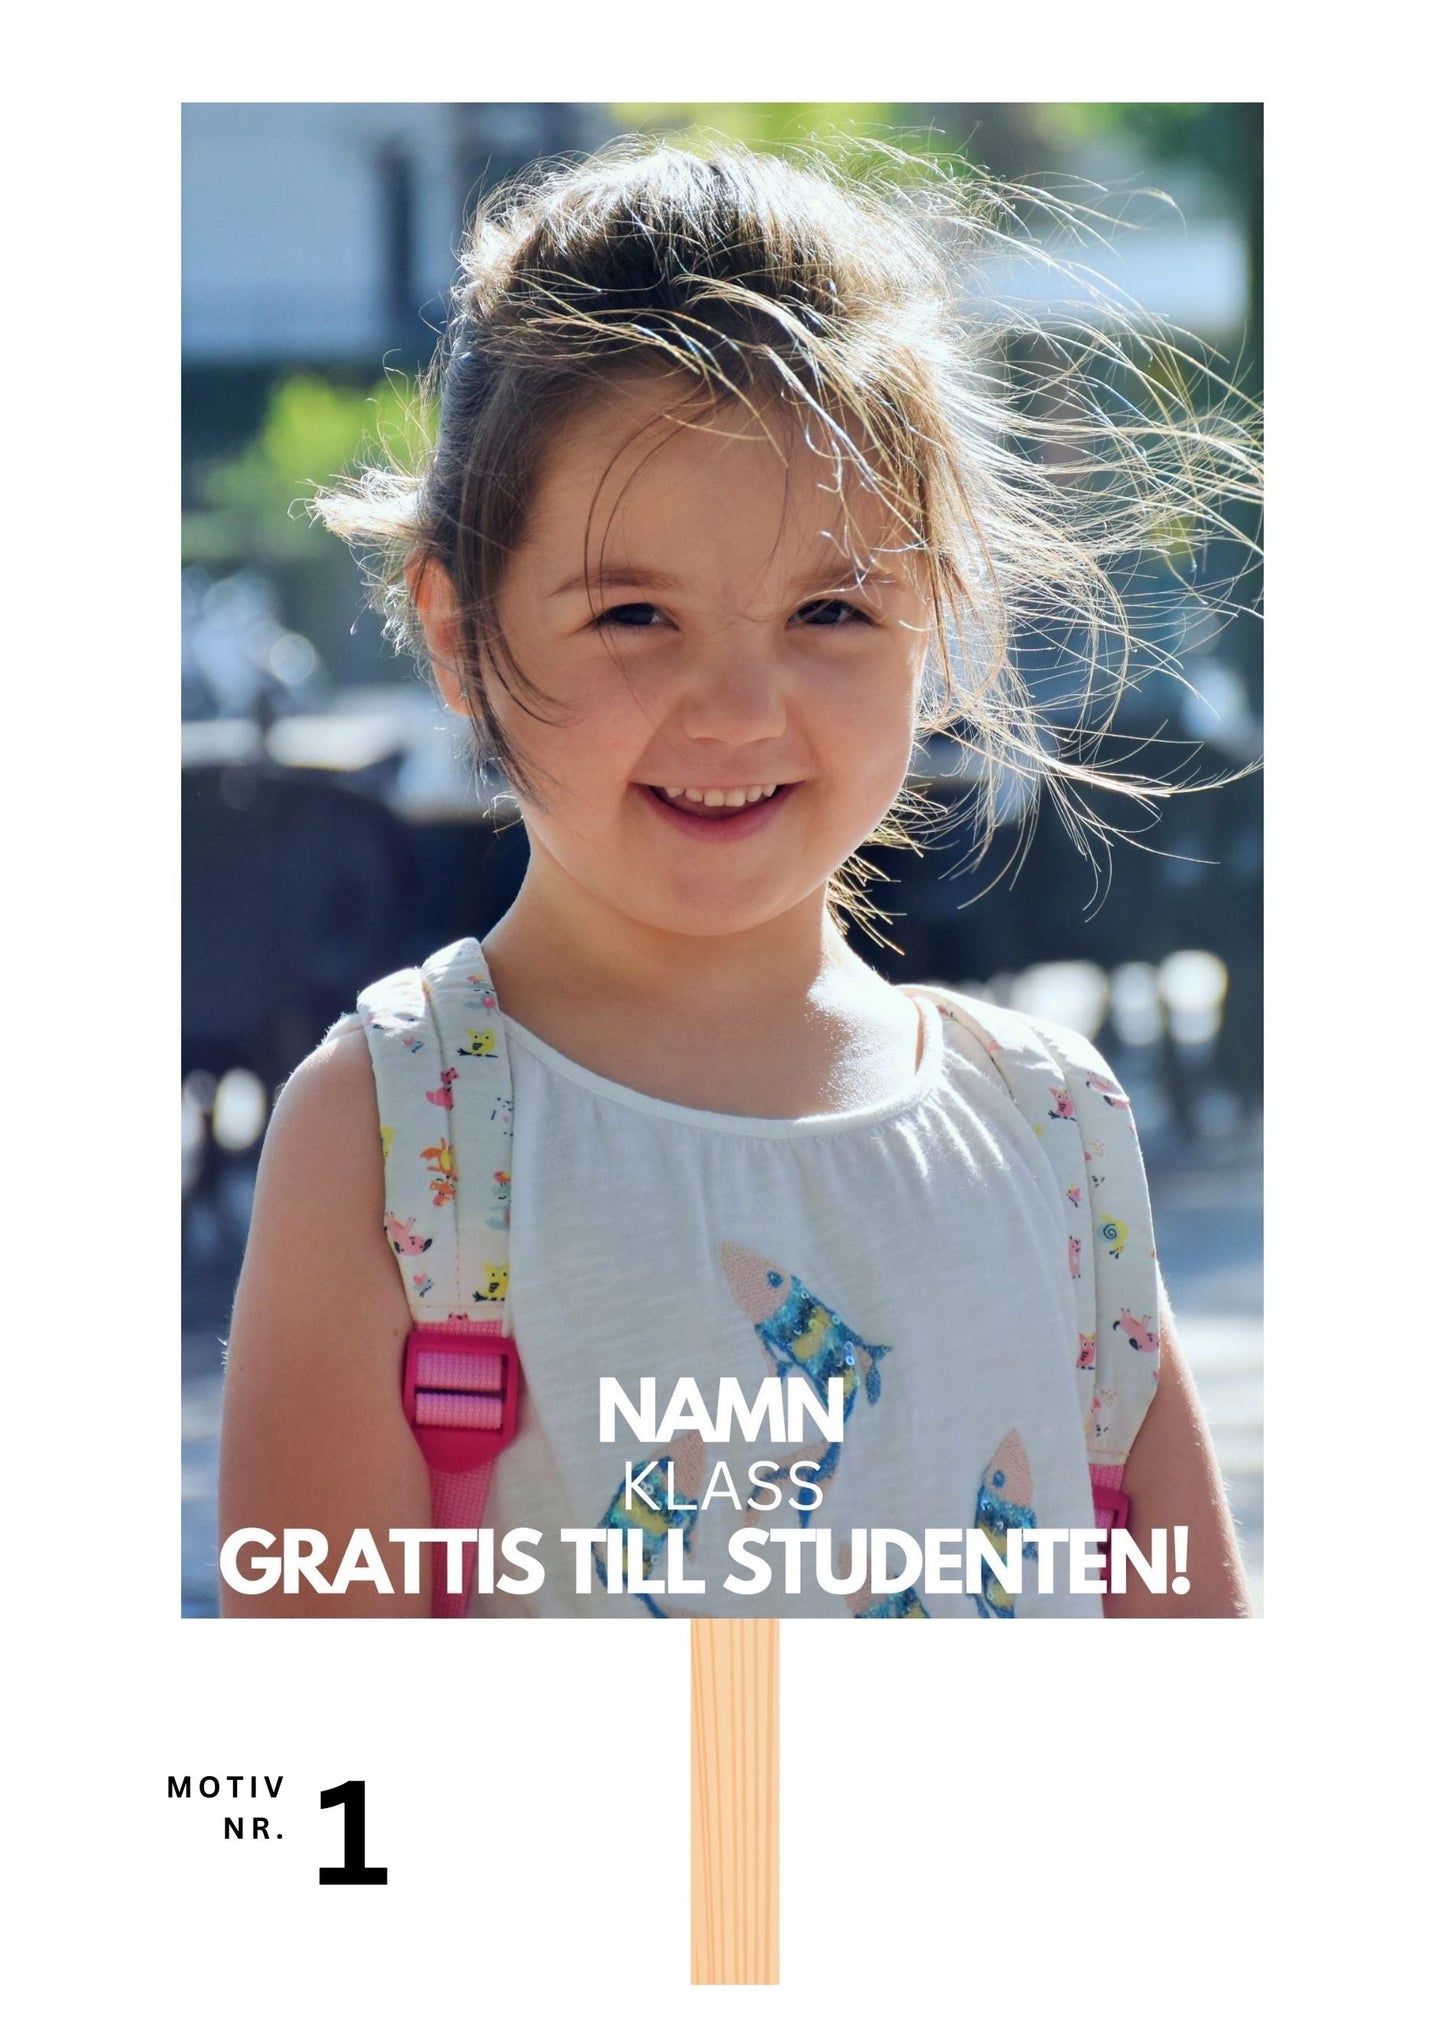 Studentskylt och studentplakat i Falun